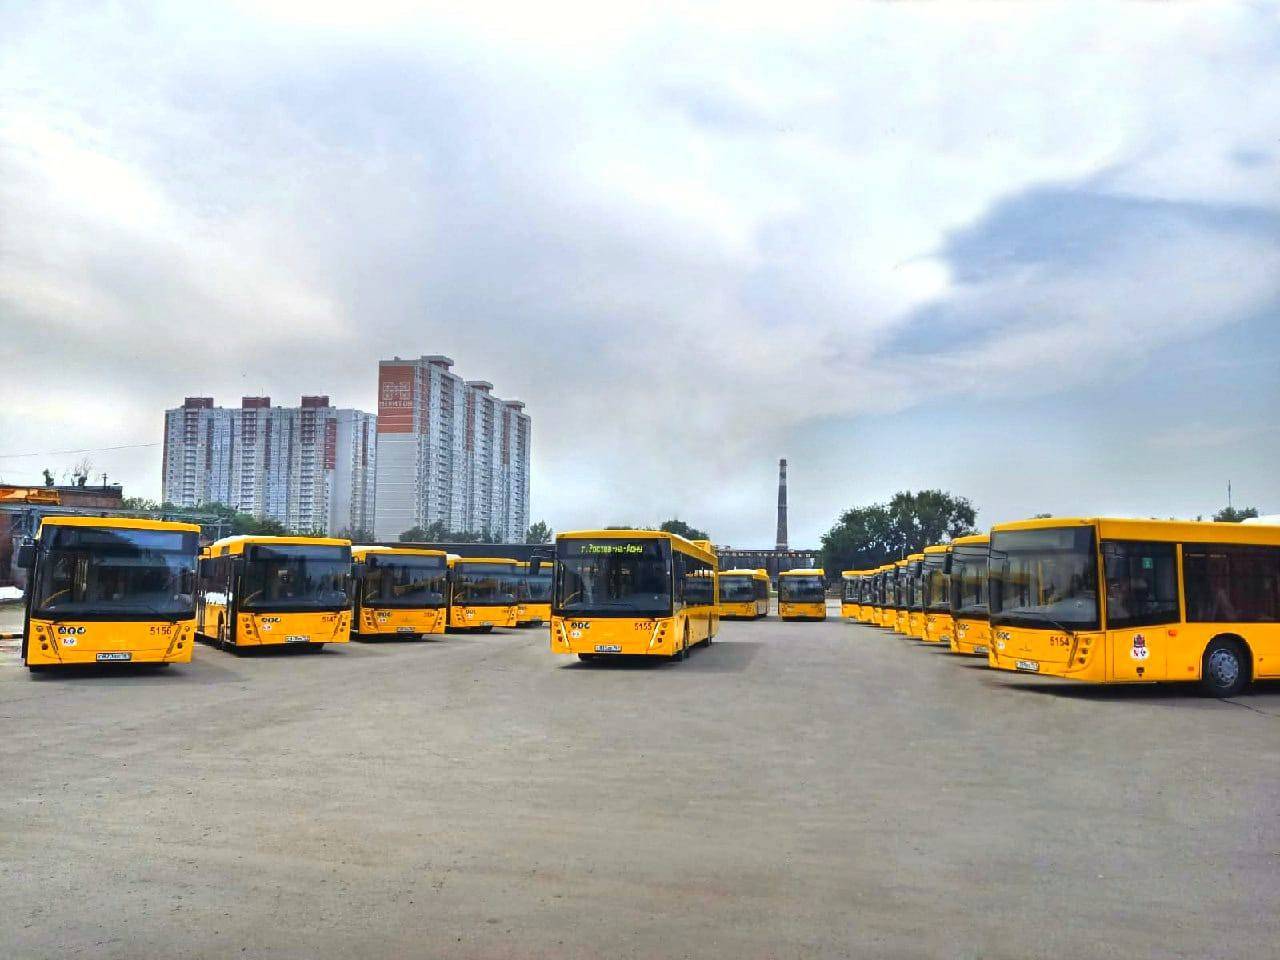 Прибывшие в Ростов 25 новых автобусов МАЗ из Белоруссии выйдут на маршруты на Западном, Северном, Военведе и Сельмаше